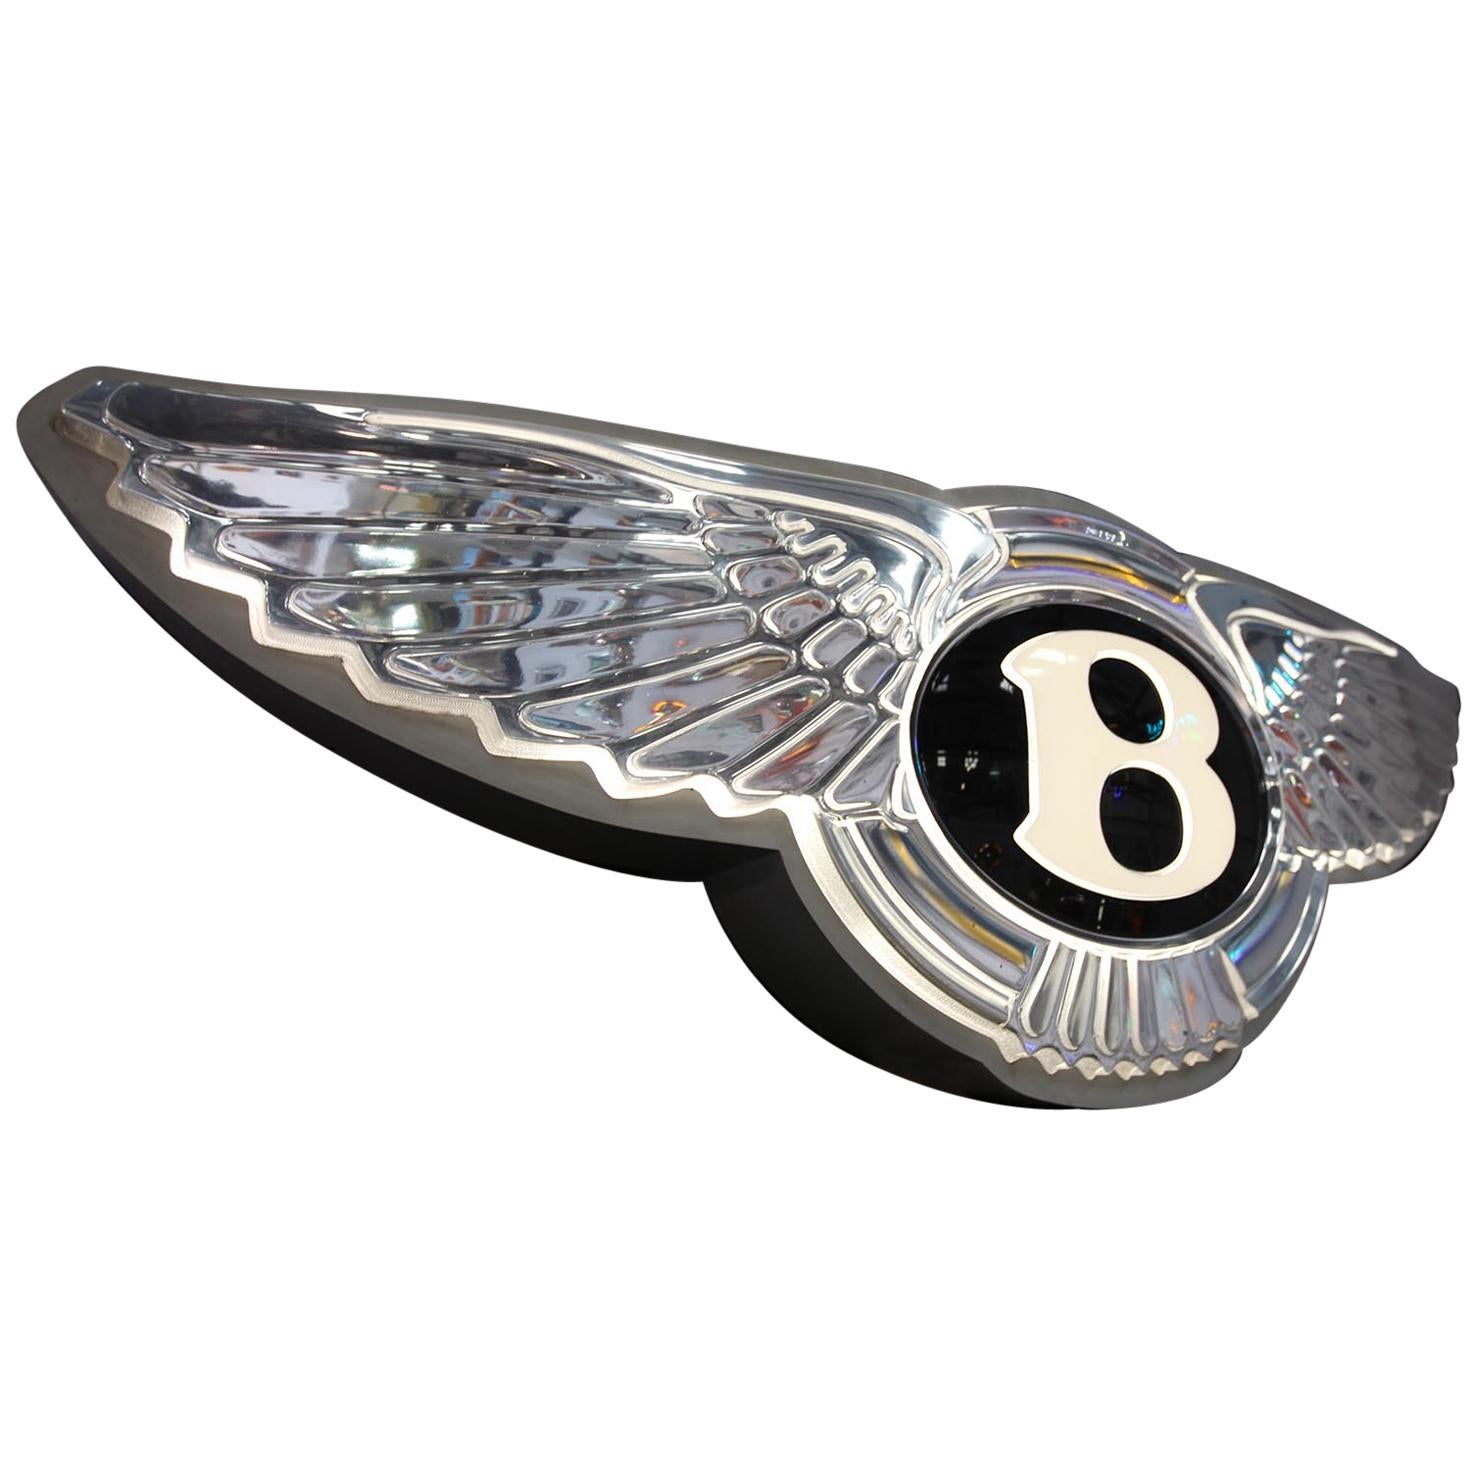 Bentley Dealership Sign For Sale